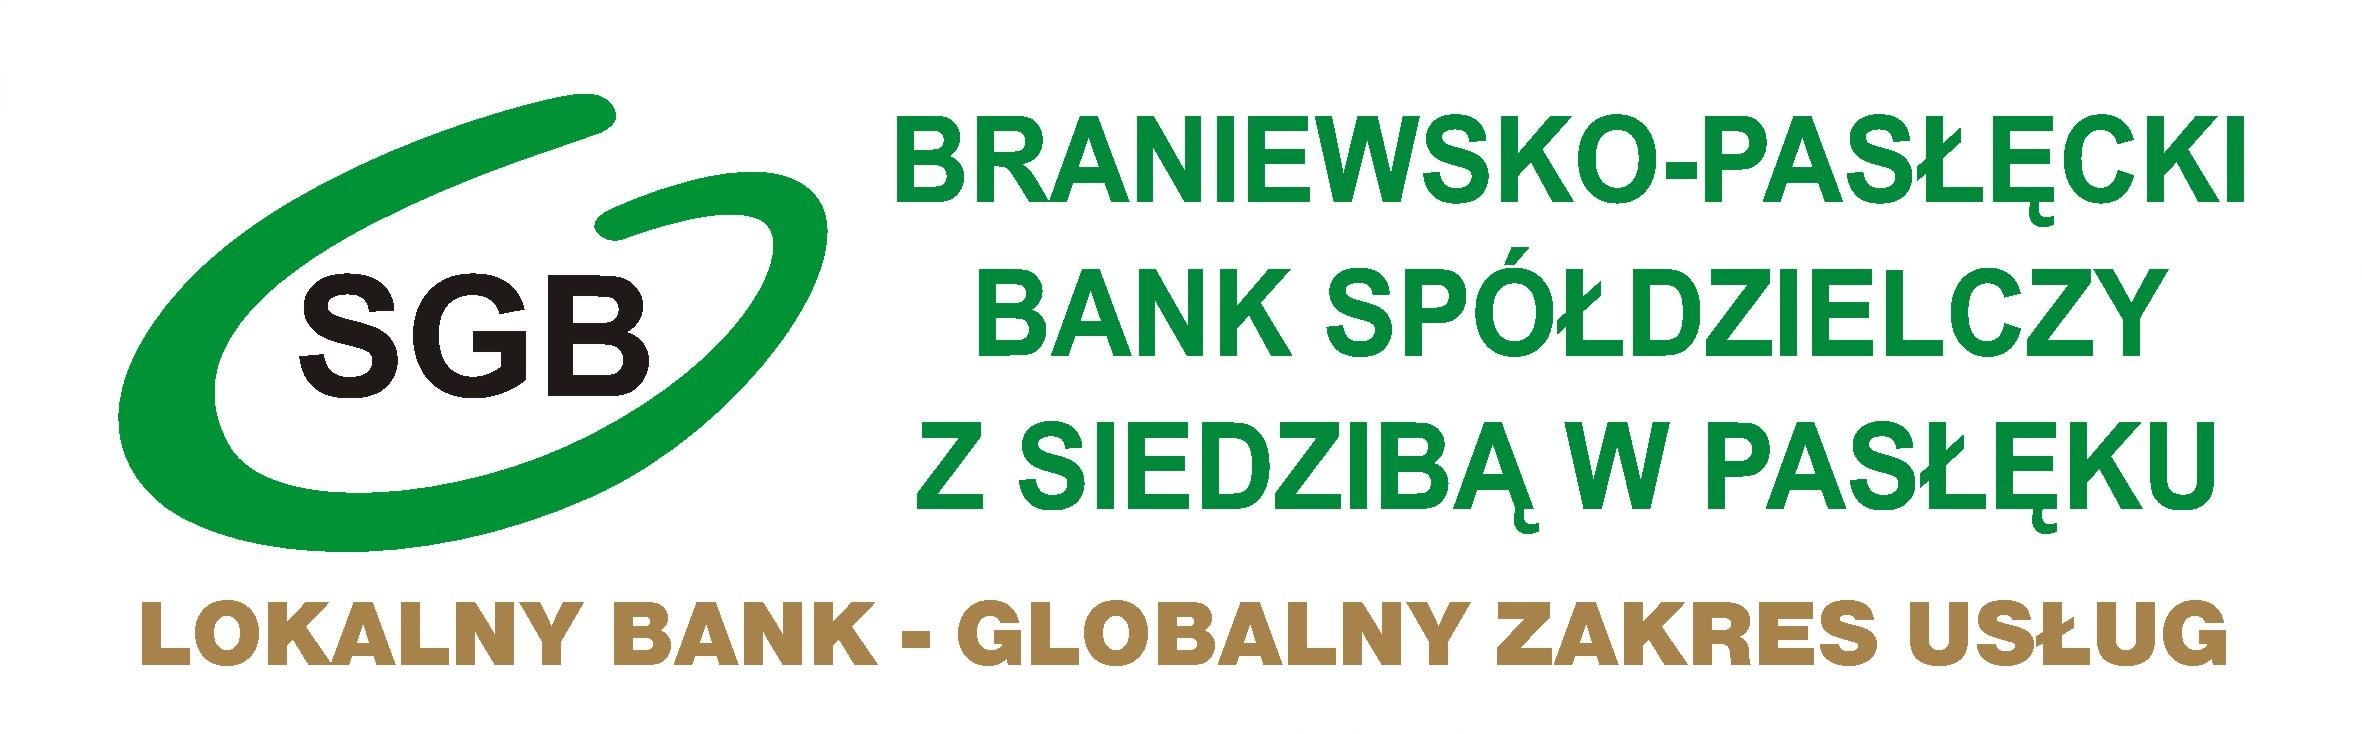 Bezpieczeństwo w Internecie - Braniewsko-Pasłęcki Bank Spółdzielczy z siedzibą w Pasłęku